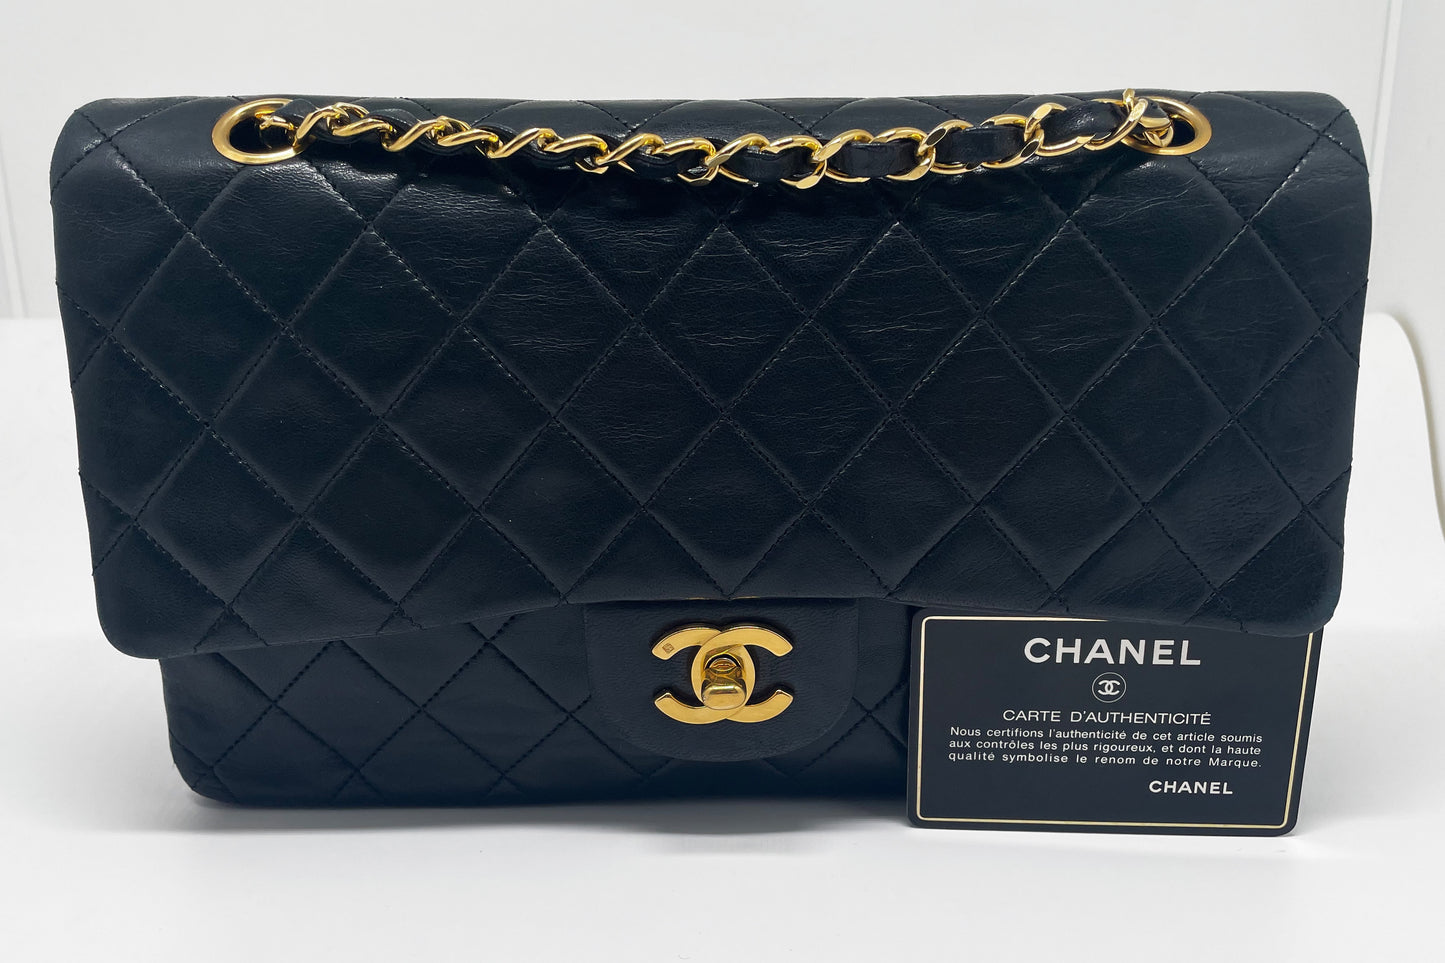 Sac à main Chanel Classique medium en cuir d'agneau noir et métal doré.